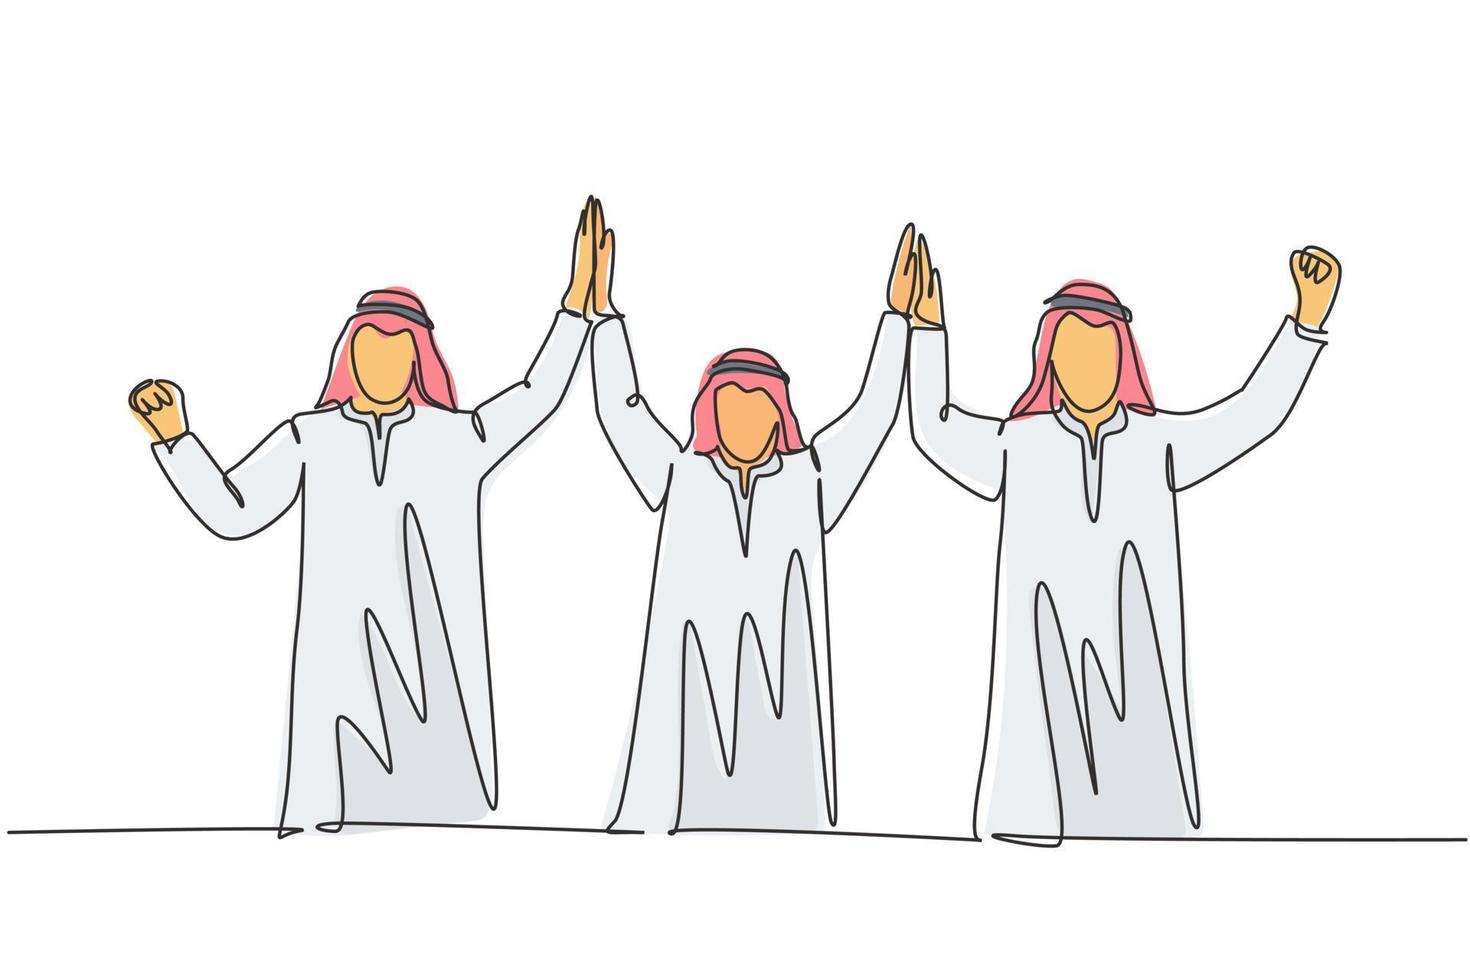 un unico disegno a tratteggio del giovane team di marketing musulmano alza la mano insieme. uomini d'affari sauditi con shmag, kandora, foulard, thobe, ghutra. illustrazione vettoriale di disegno di disegno di linea continua